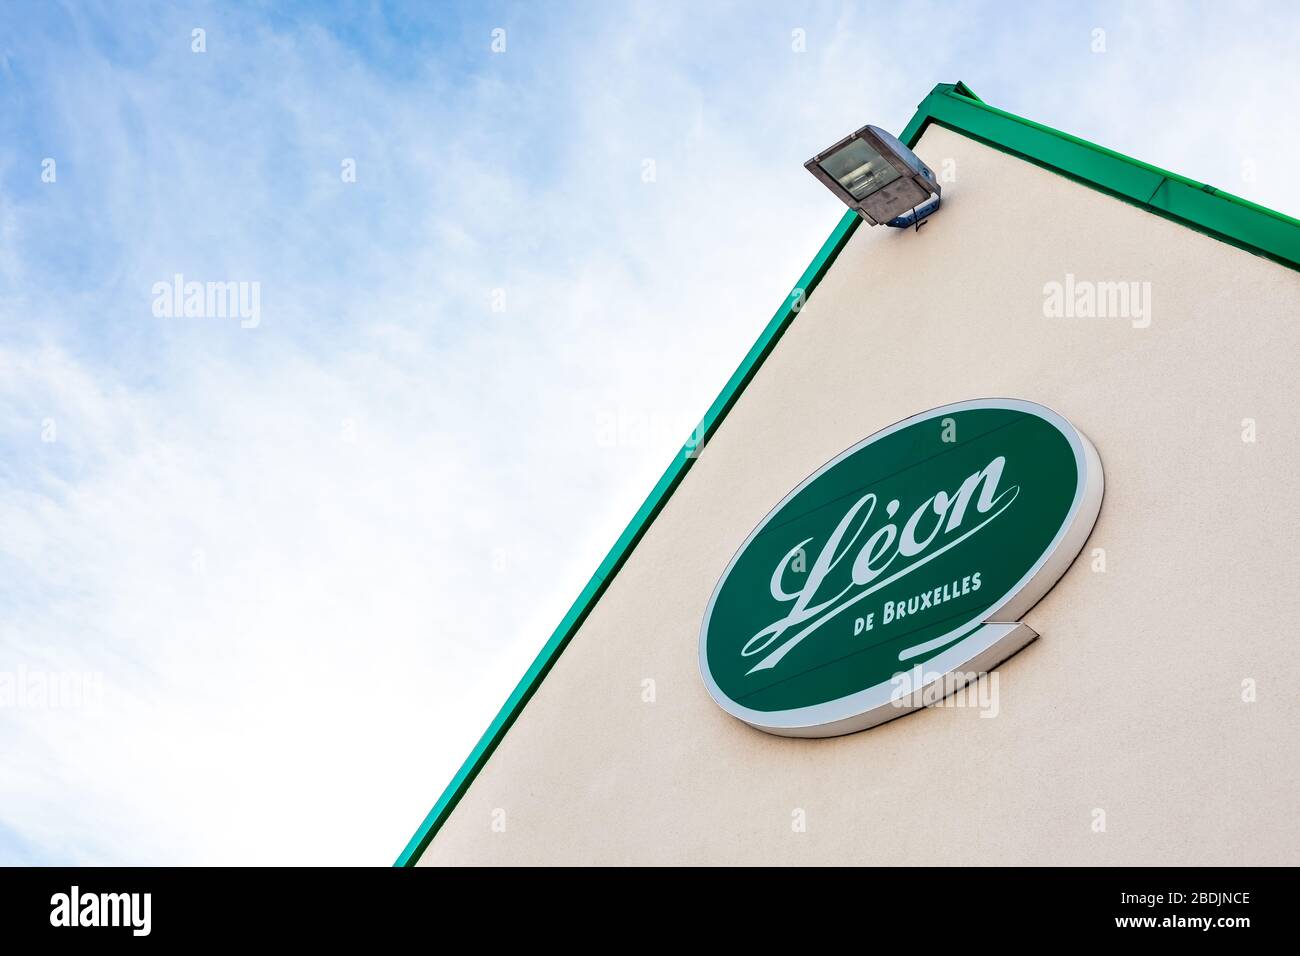 Leon de Bruxelles, catena di ristoranti che è conosciuta principalmente per servire moules-frites, marchio logo sul suo edificio ristorante situato a Lione, Francia Foto Stock